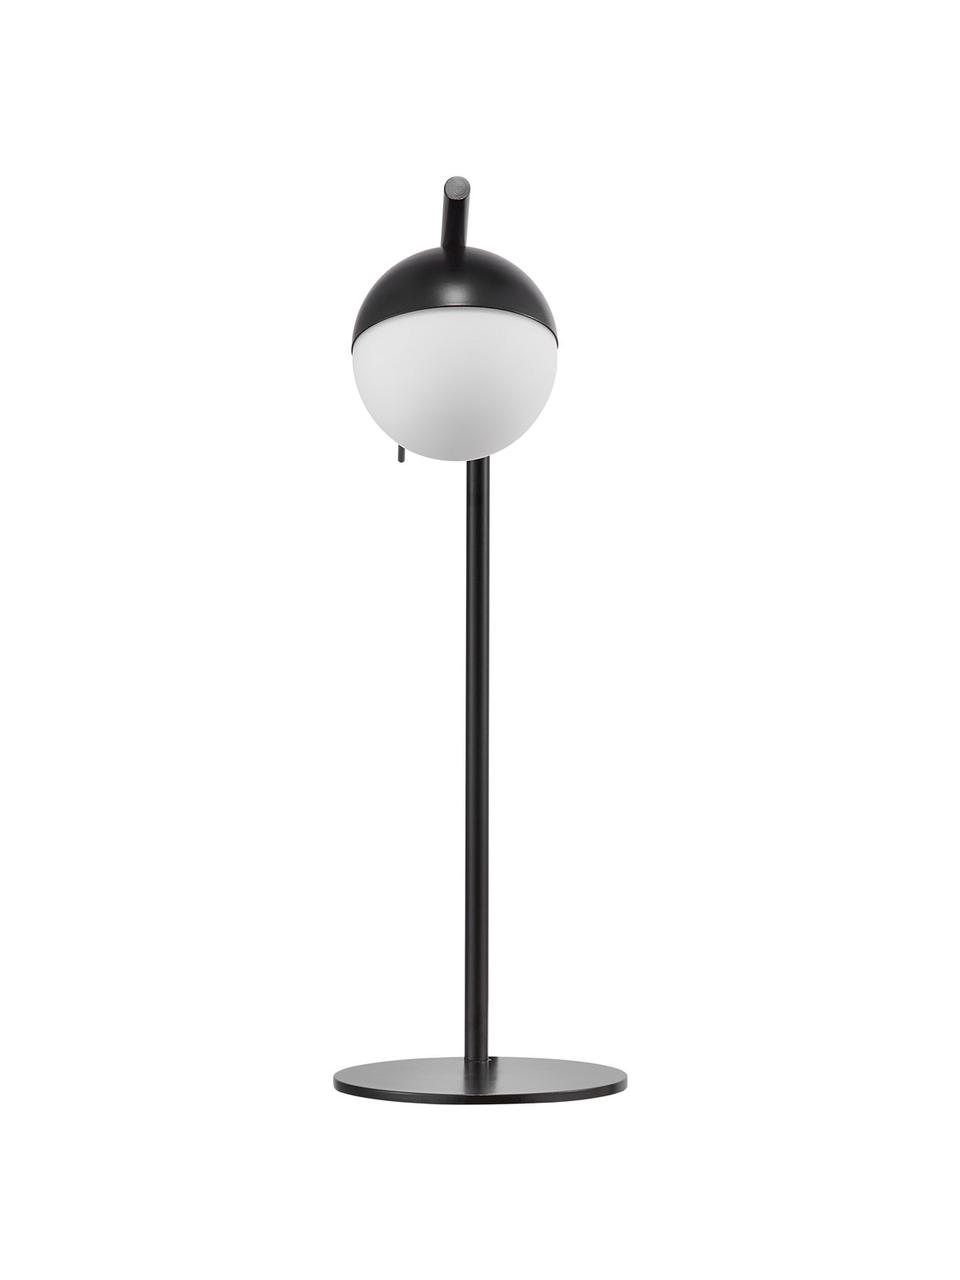 Tafellamp Contina met opaalglas, Lampenkap: opaalglas, Lampvoet: gecoat metaal, Wit, zwart, 15 x 49 cm